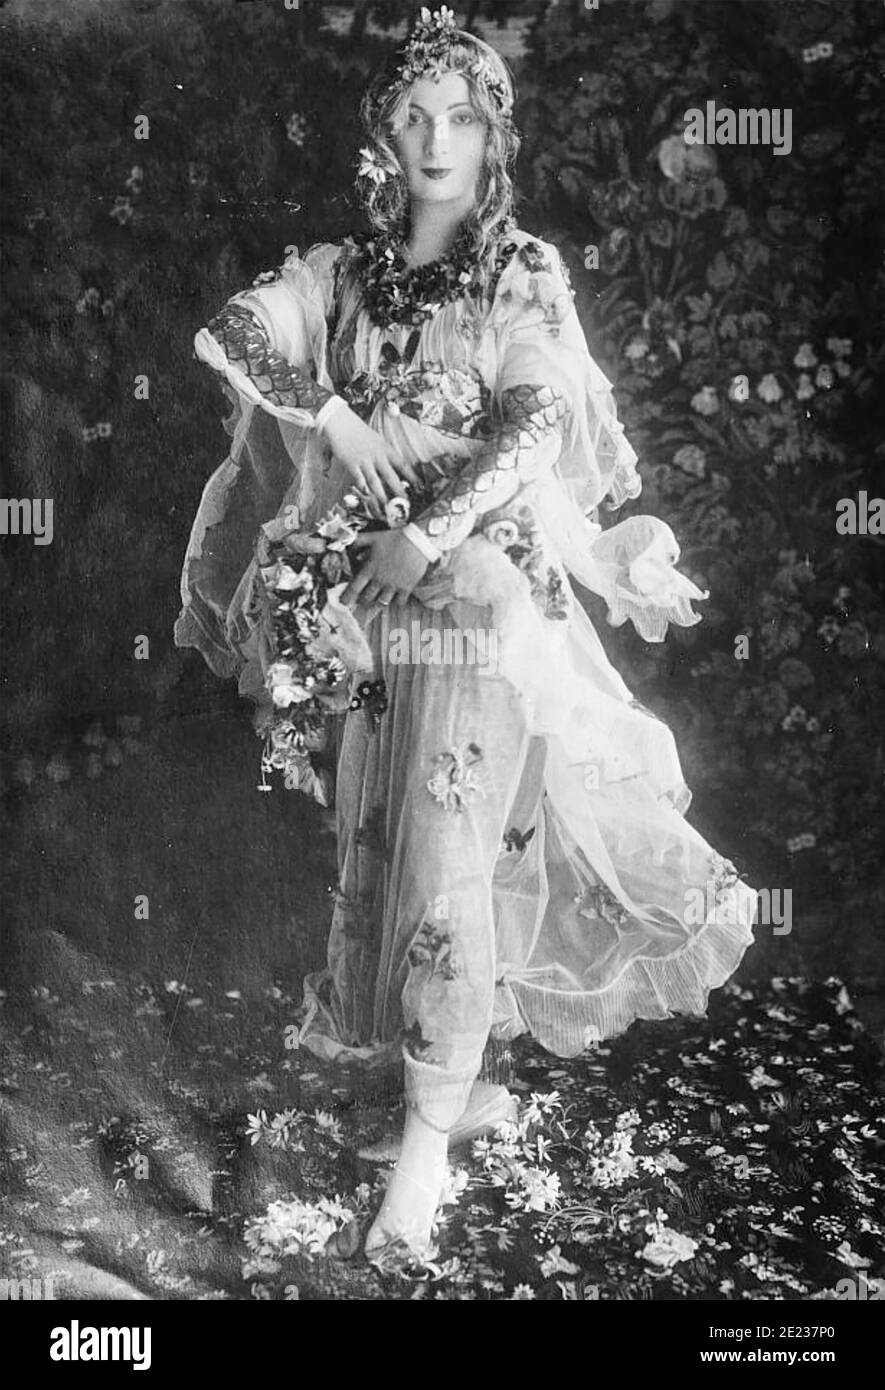 HAZEL LAVERY (1880-1935) artiste et ami américain de W. B. Years posant comme Flora dans la peinture Primavera de Botticelli. Banque D'Images